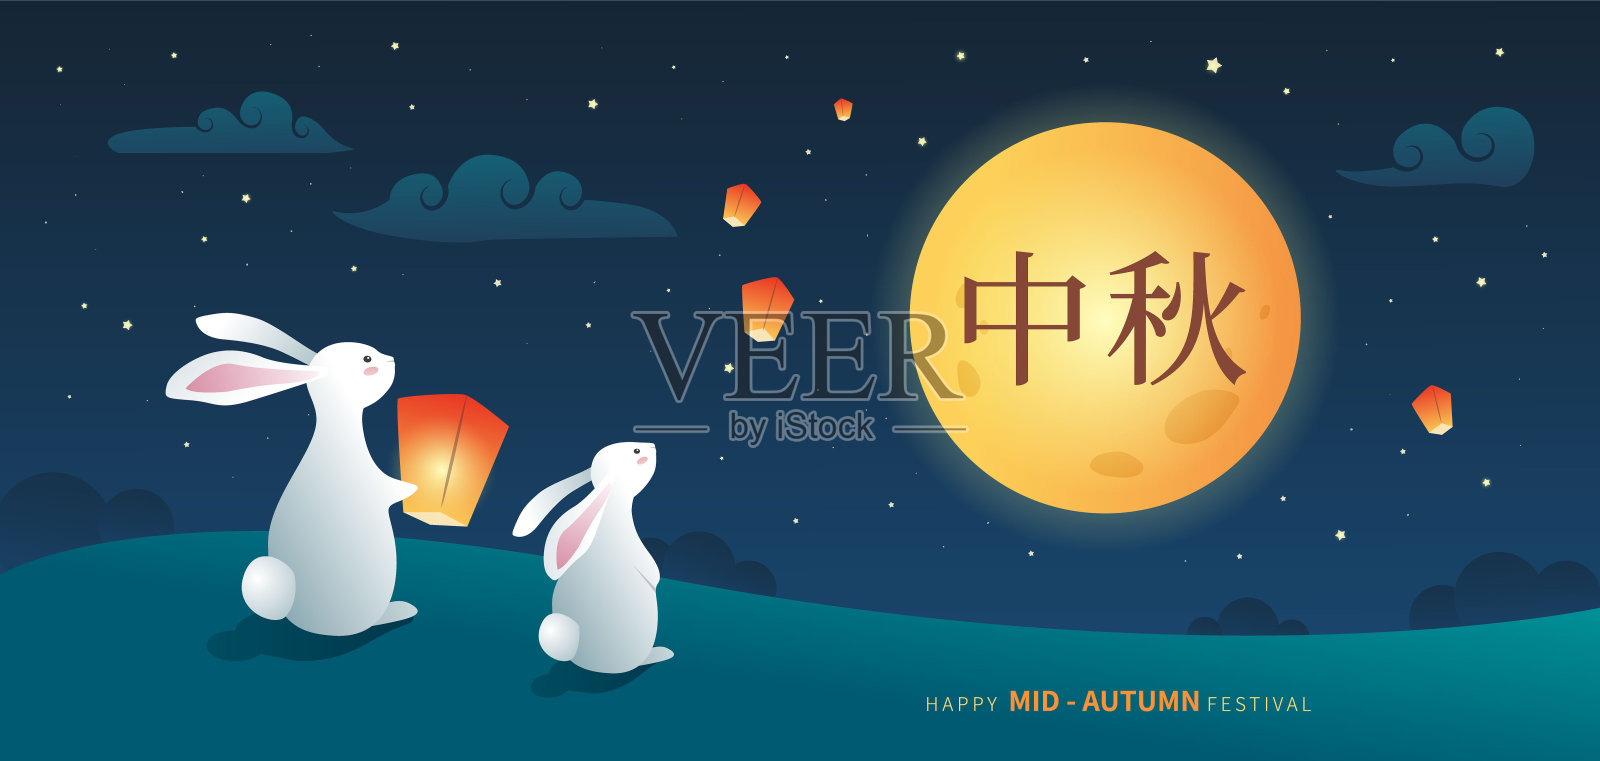 中秋节庆祝贺卡。兔子在晚上看满月，放天灯。——矢量设计模板素材